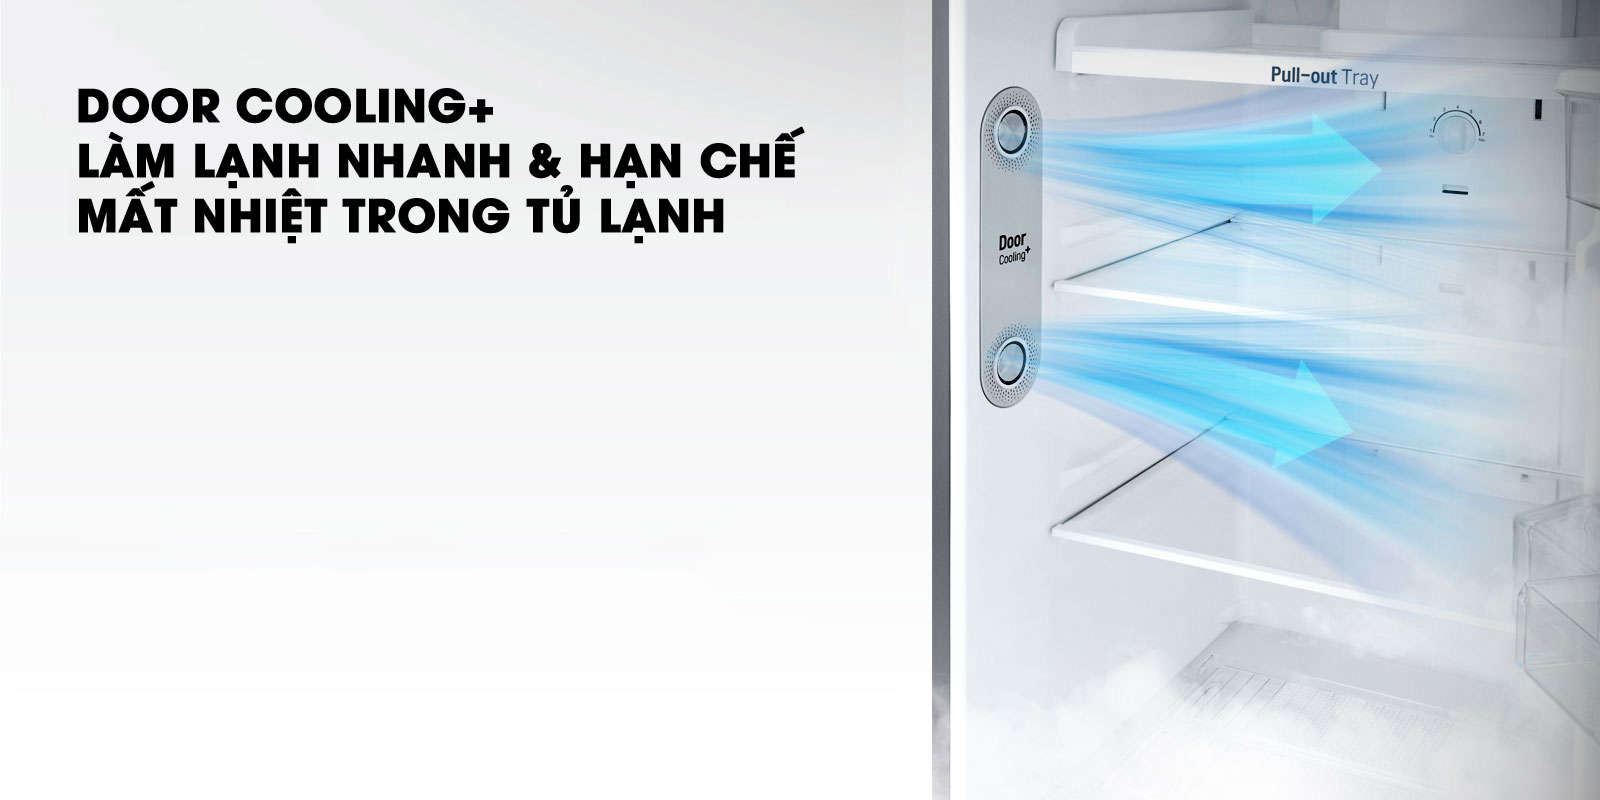 Làm lạnh nhanh hơn với công nghệ DoorCooling+ - Tủ lạnh LG Inverter 208 lít GN-M208BL